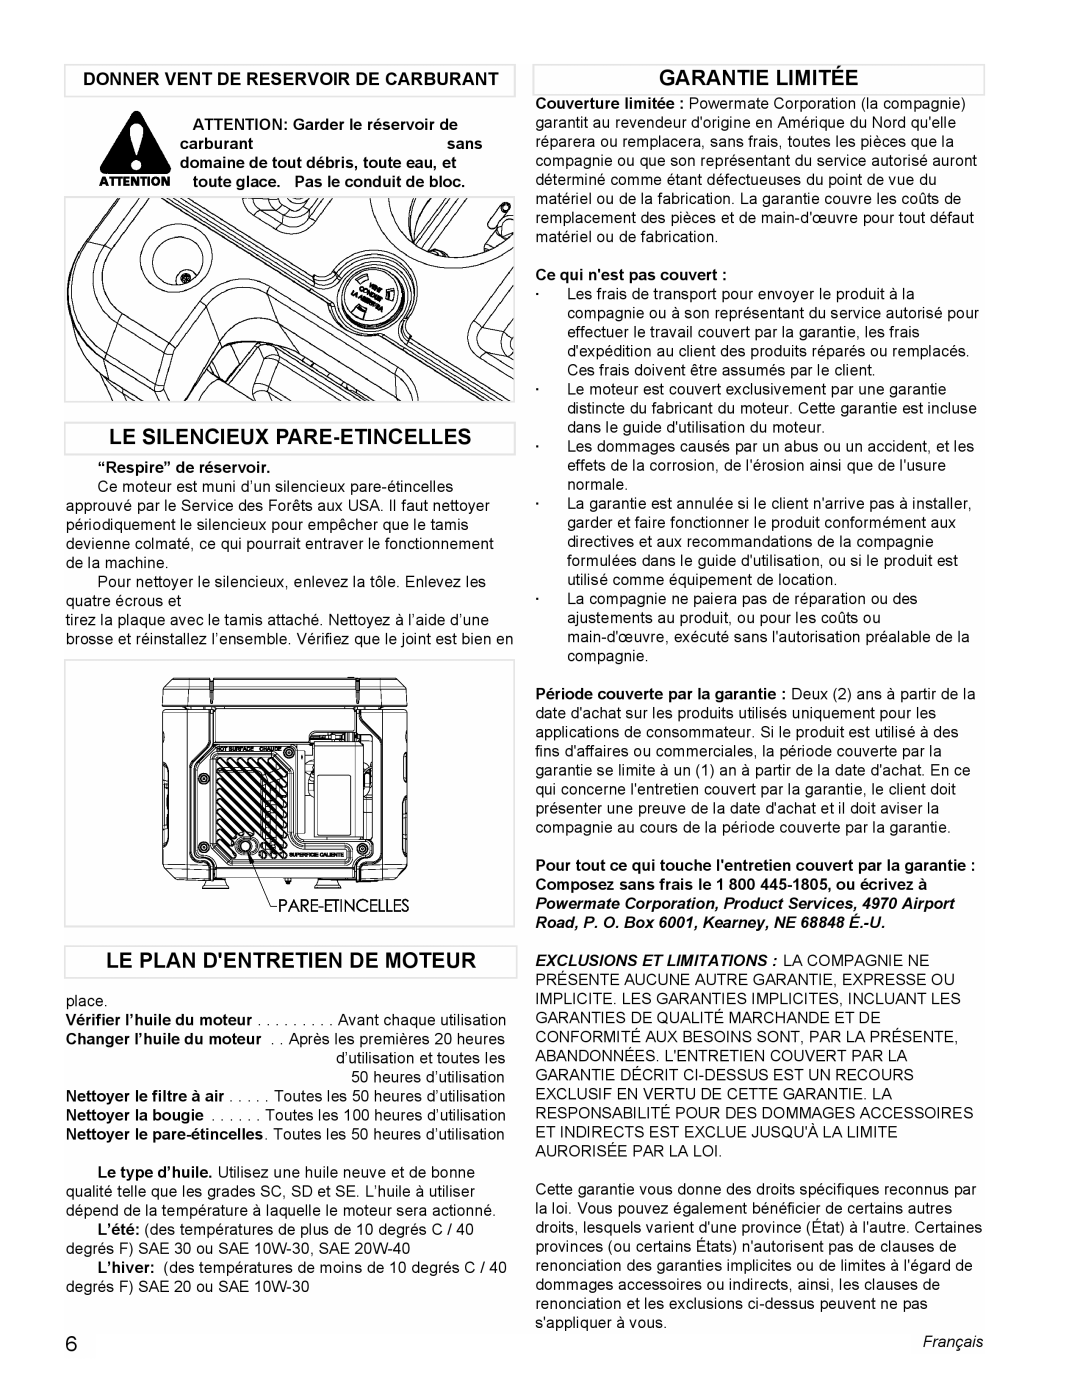 Powermate PMC401856 manual Le Silencieux Pare-Etincelles, Le Plan Dentretien De Moteur, Garantie Limitée, Français 